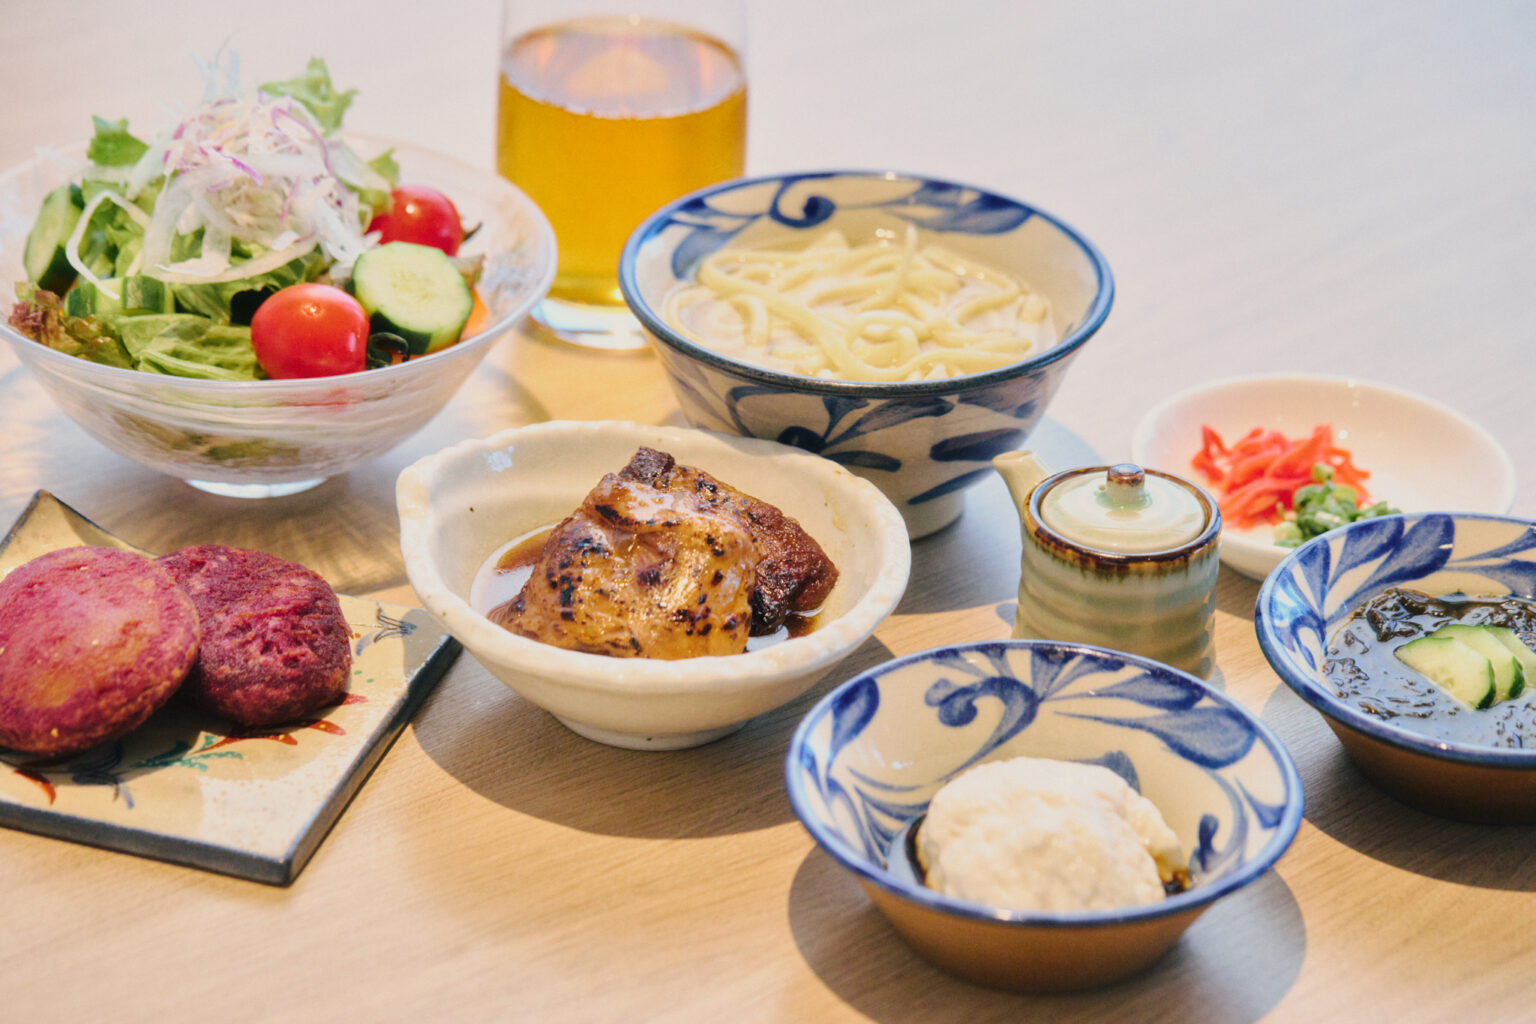 ｢ヒルトン・オナーズ・ゴールドステータス」の特典として、ジーマーミ豆腐や沖縄そばにトッピングしたい炙り軟骨ソーキなどが選べる。